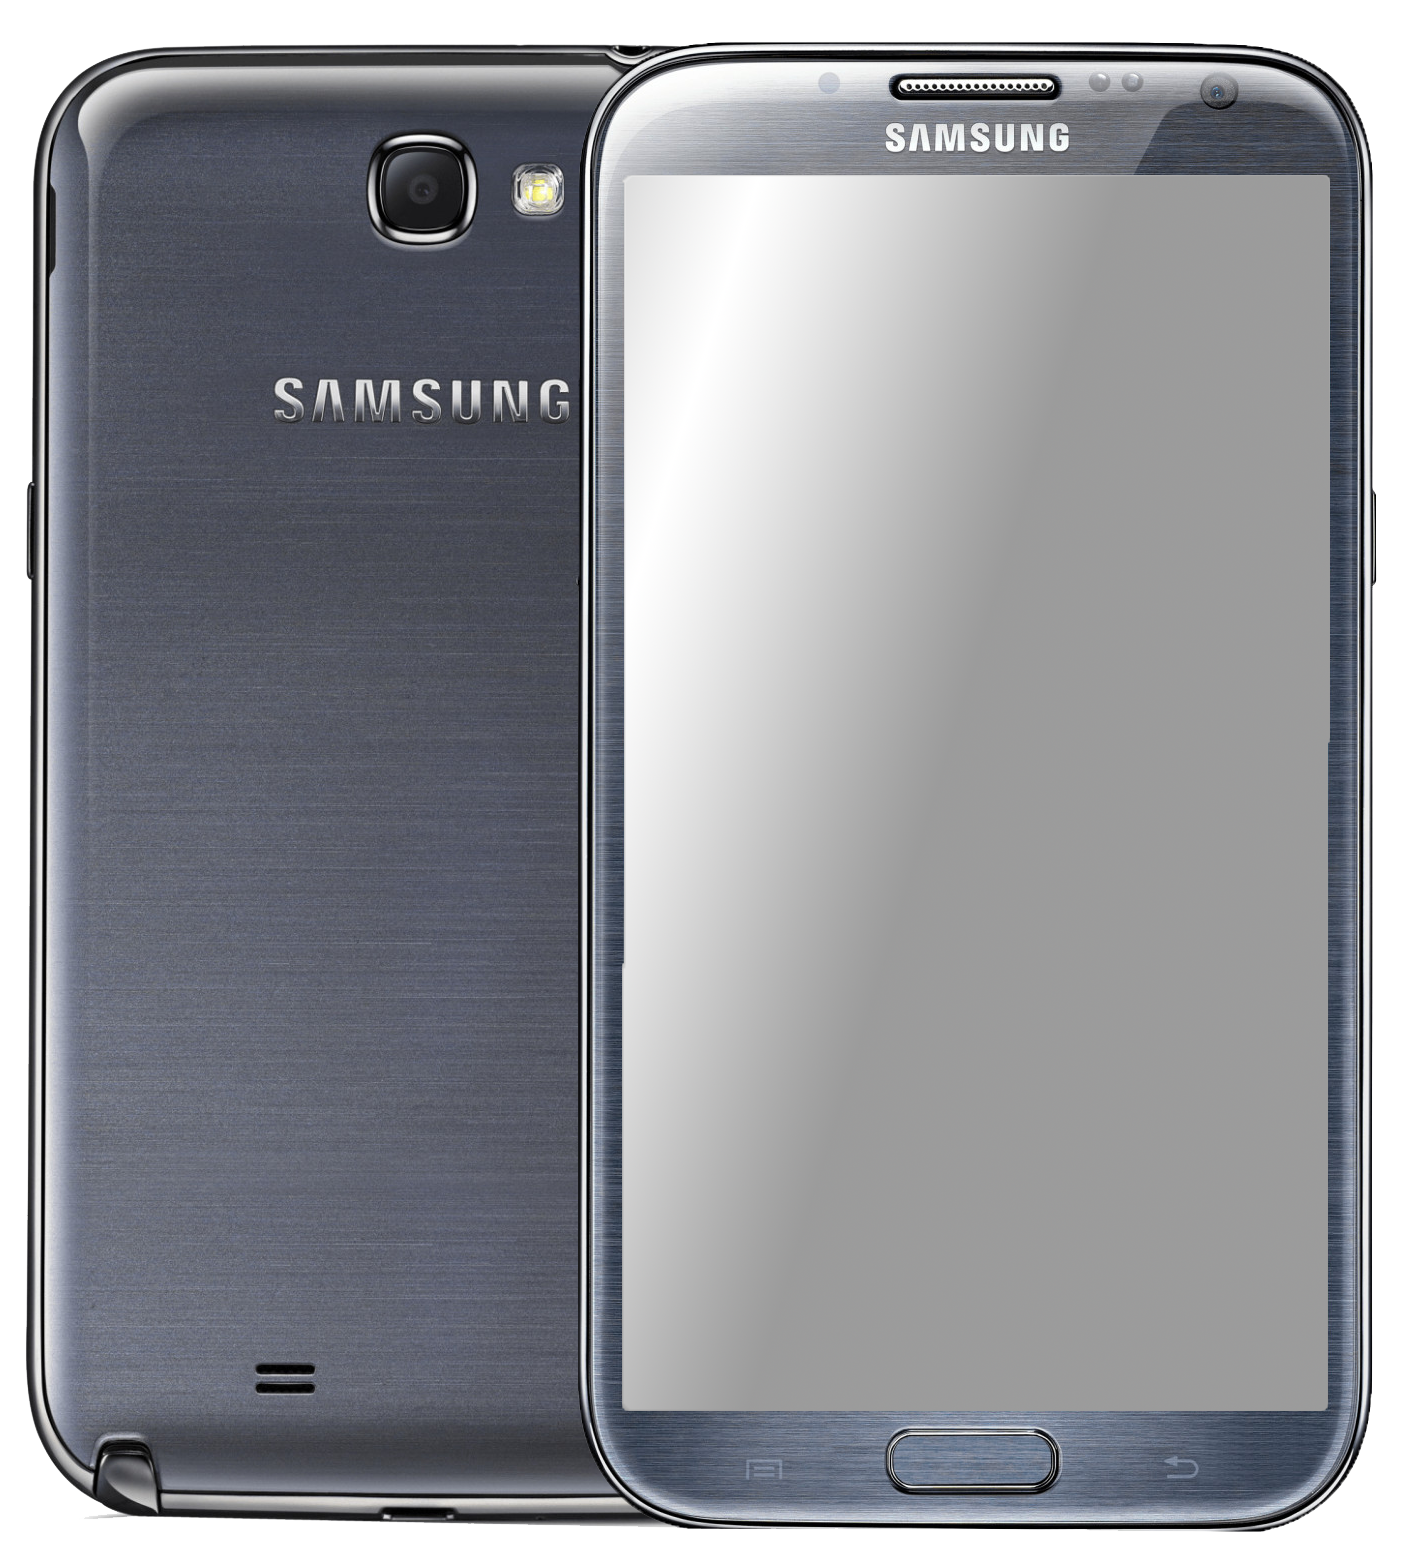 Samsung Galaxy Note 2 LTE GT-N7105 schwarz - Ohne Vertrag